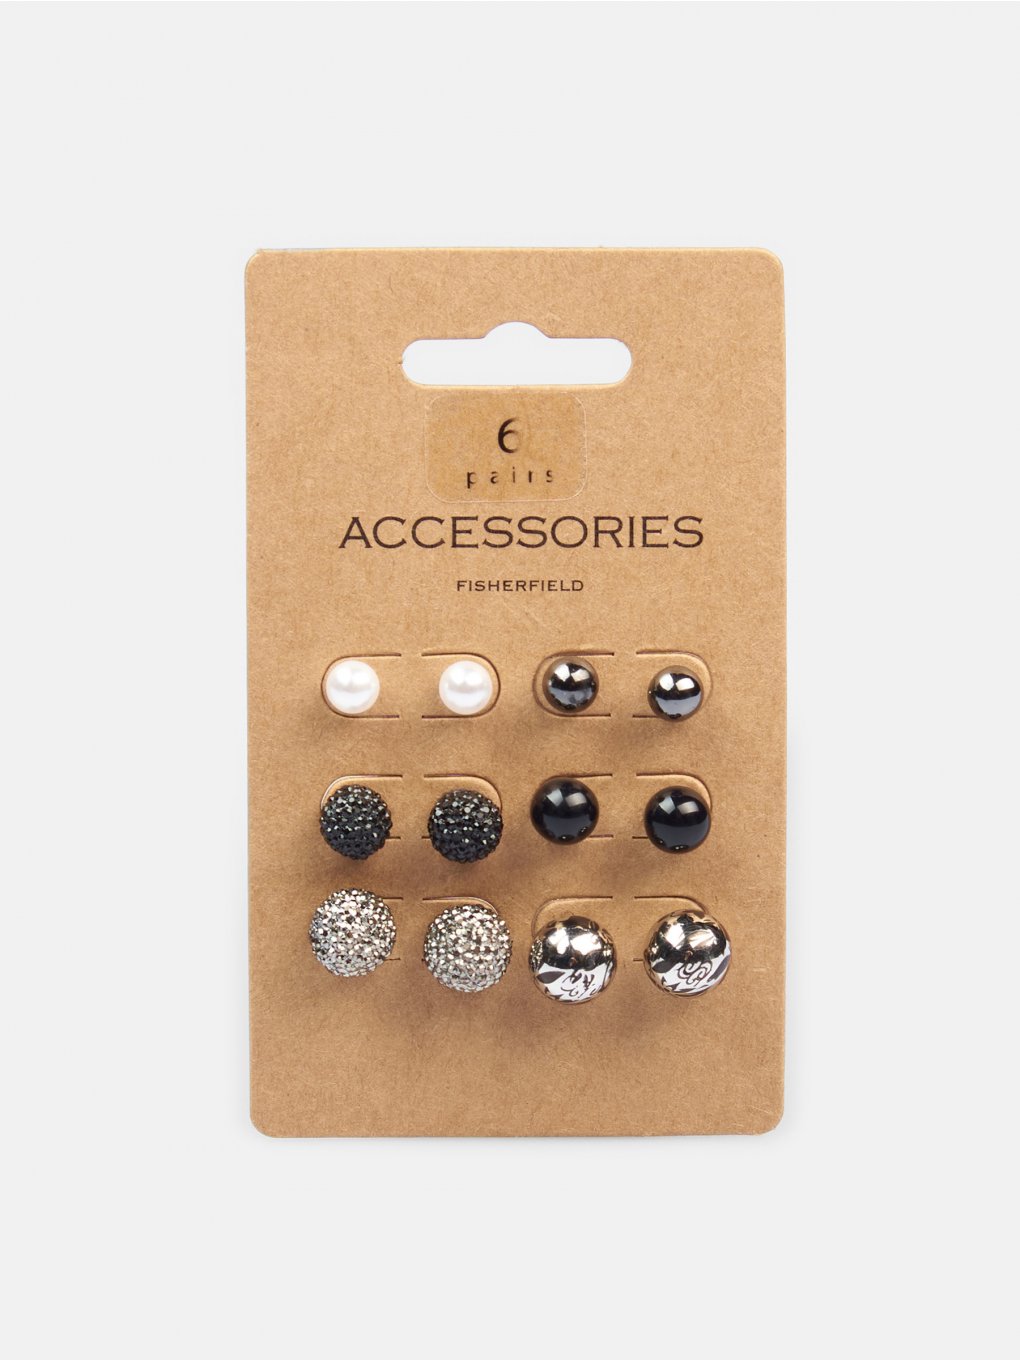 6 pair earring set